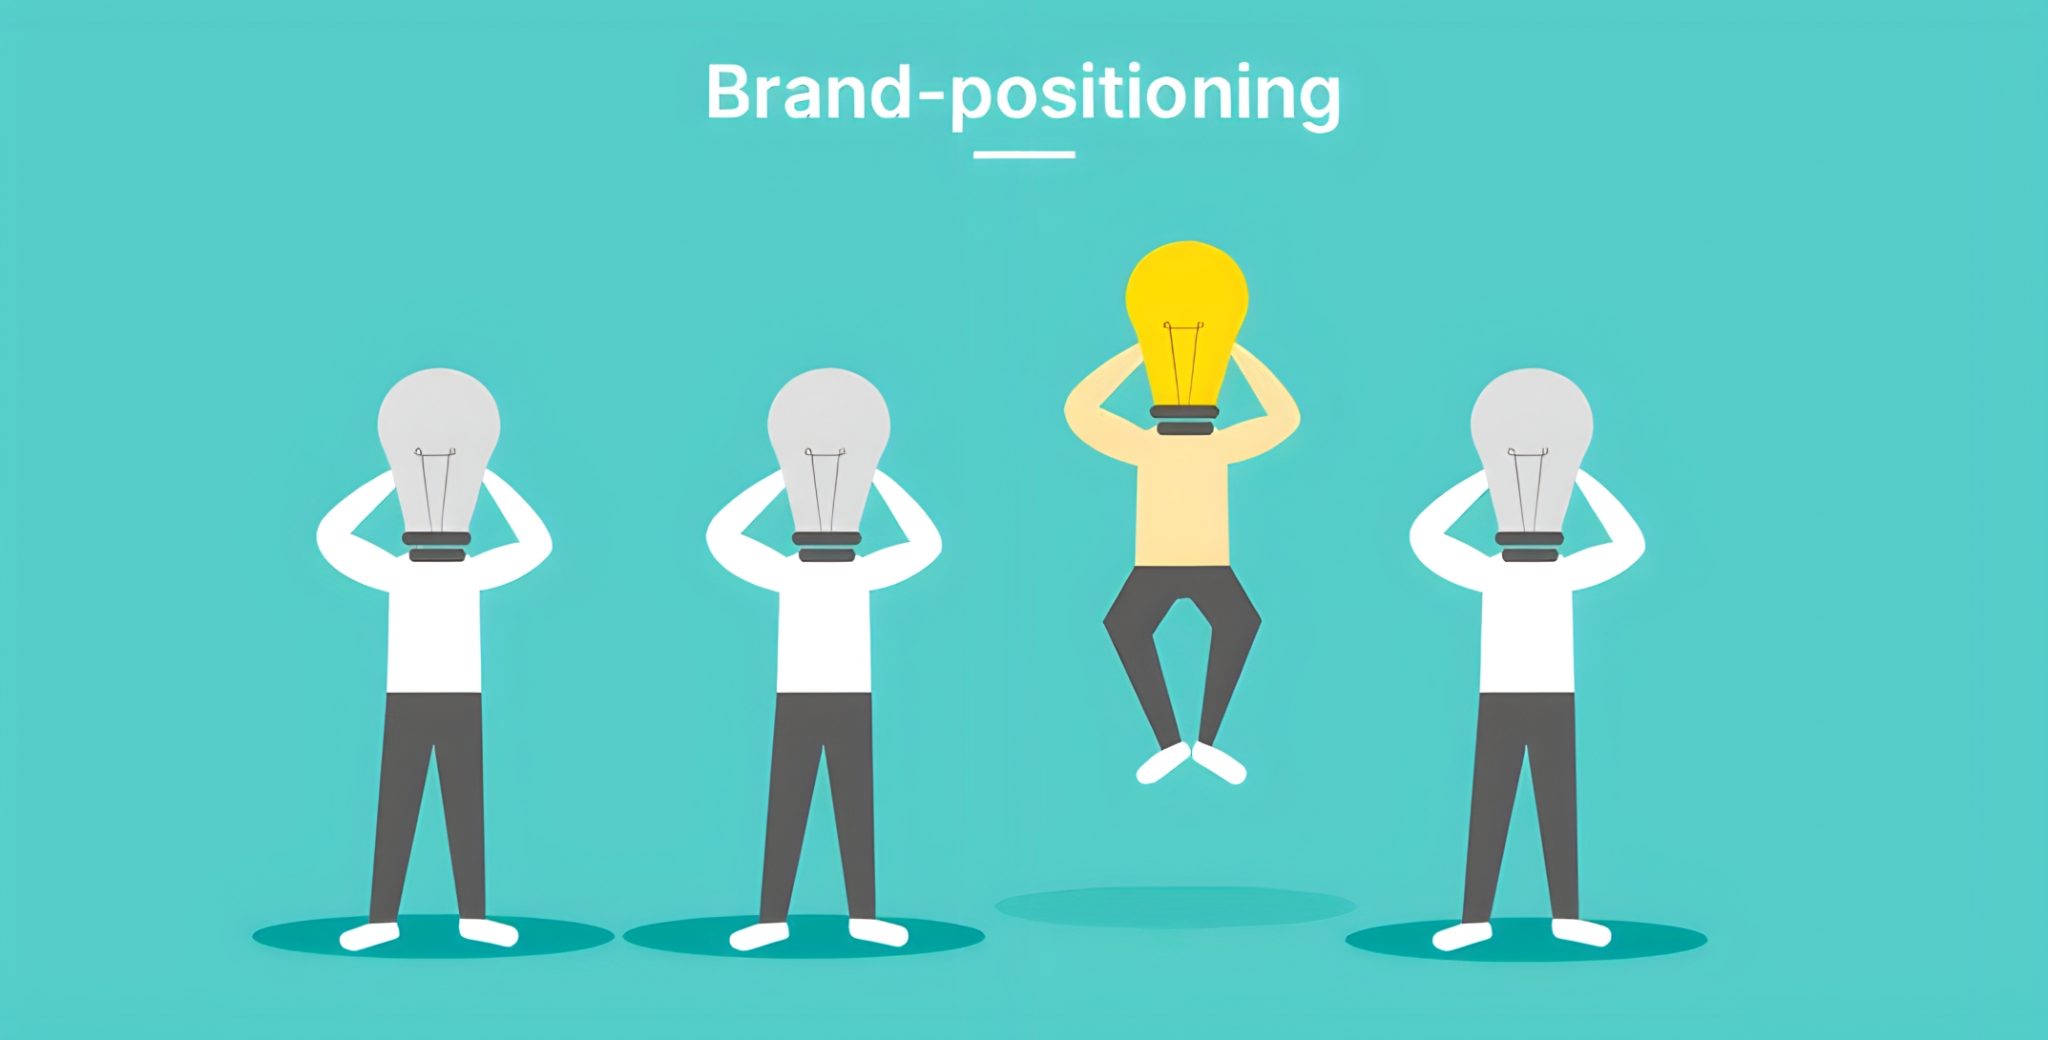 ما هو مفهوم التموضع الذهني للعلامة التجارية Brand positioning وما أهميته؟ 